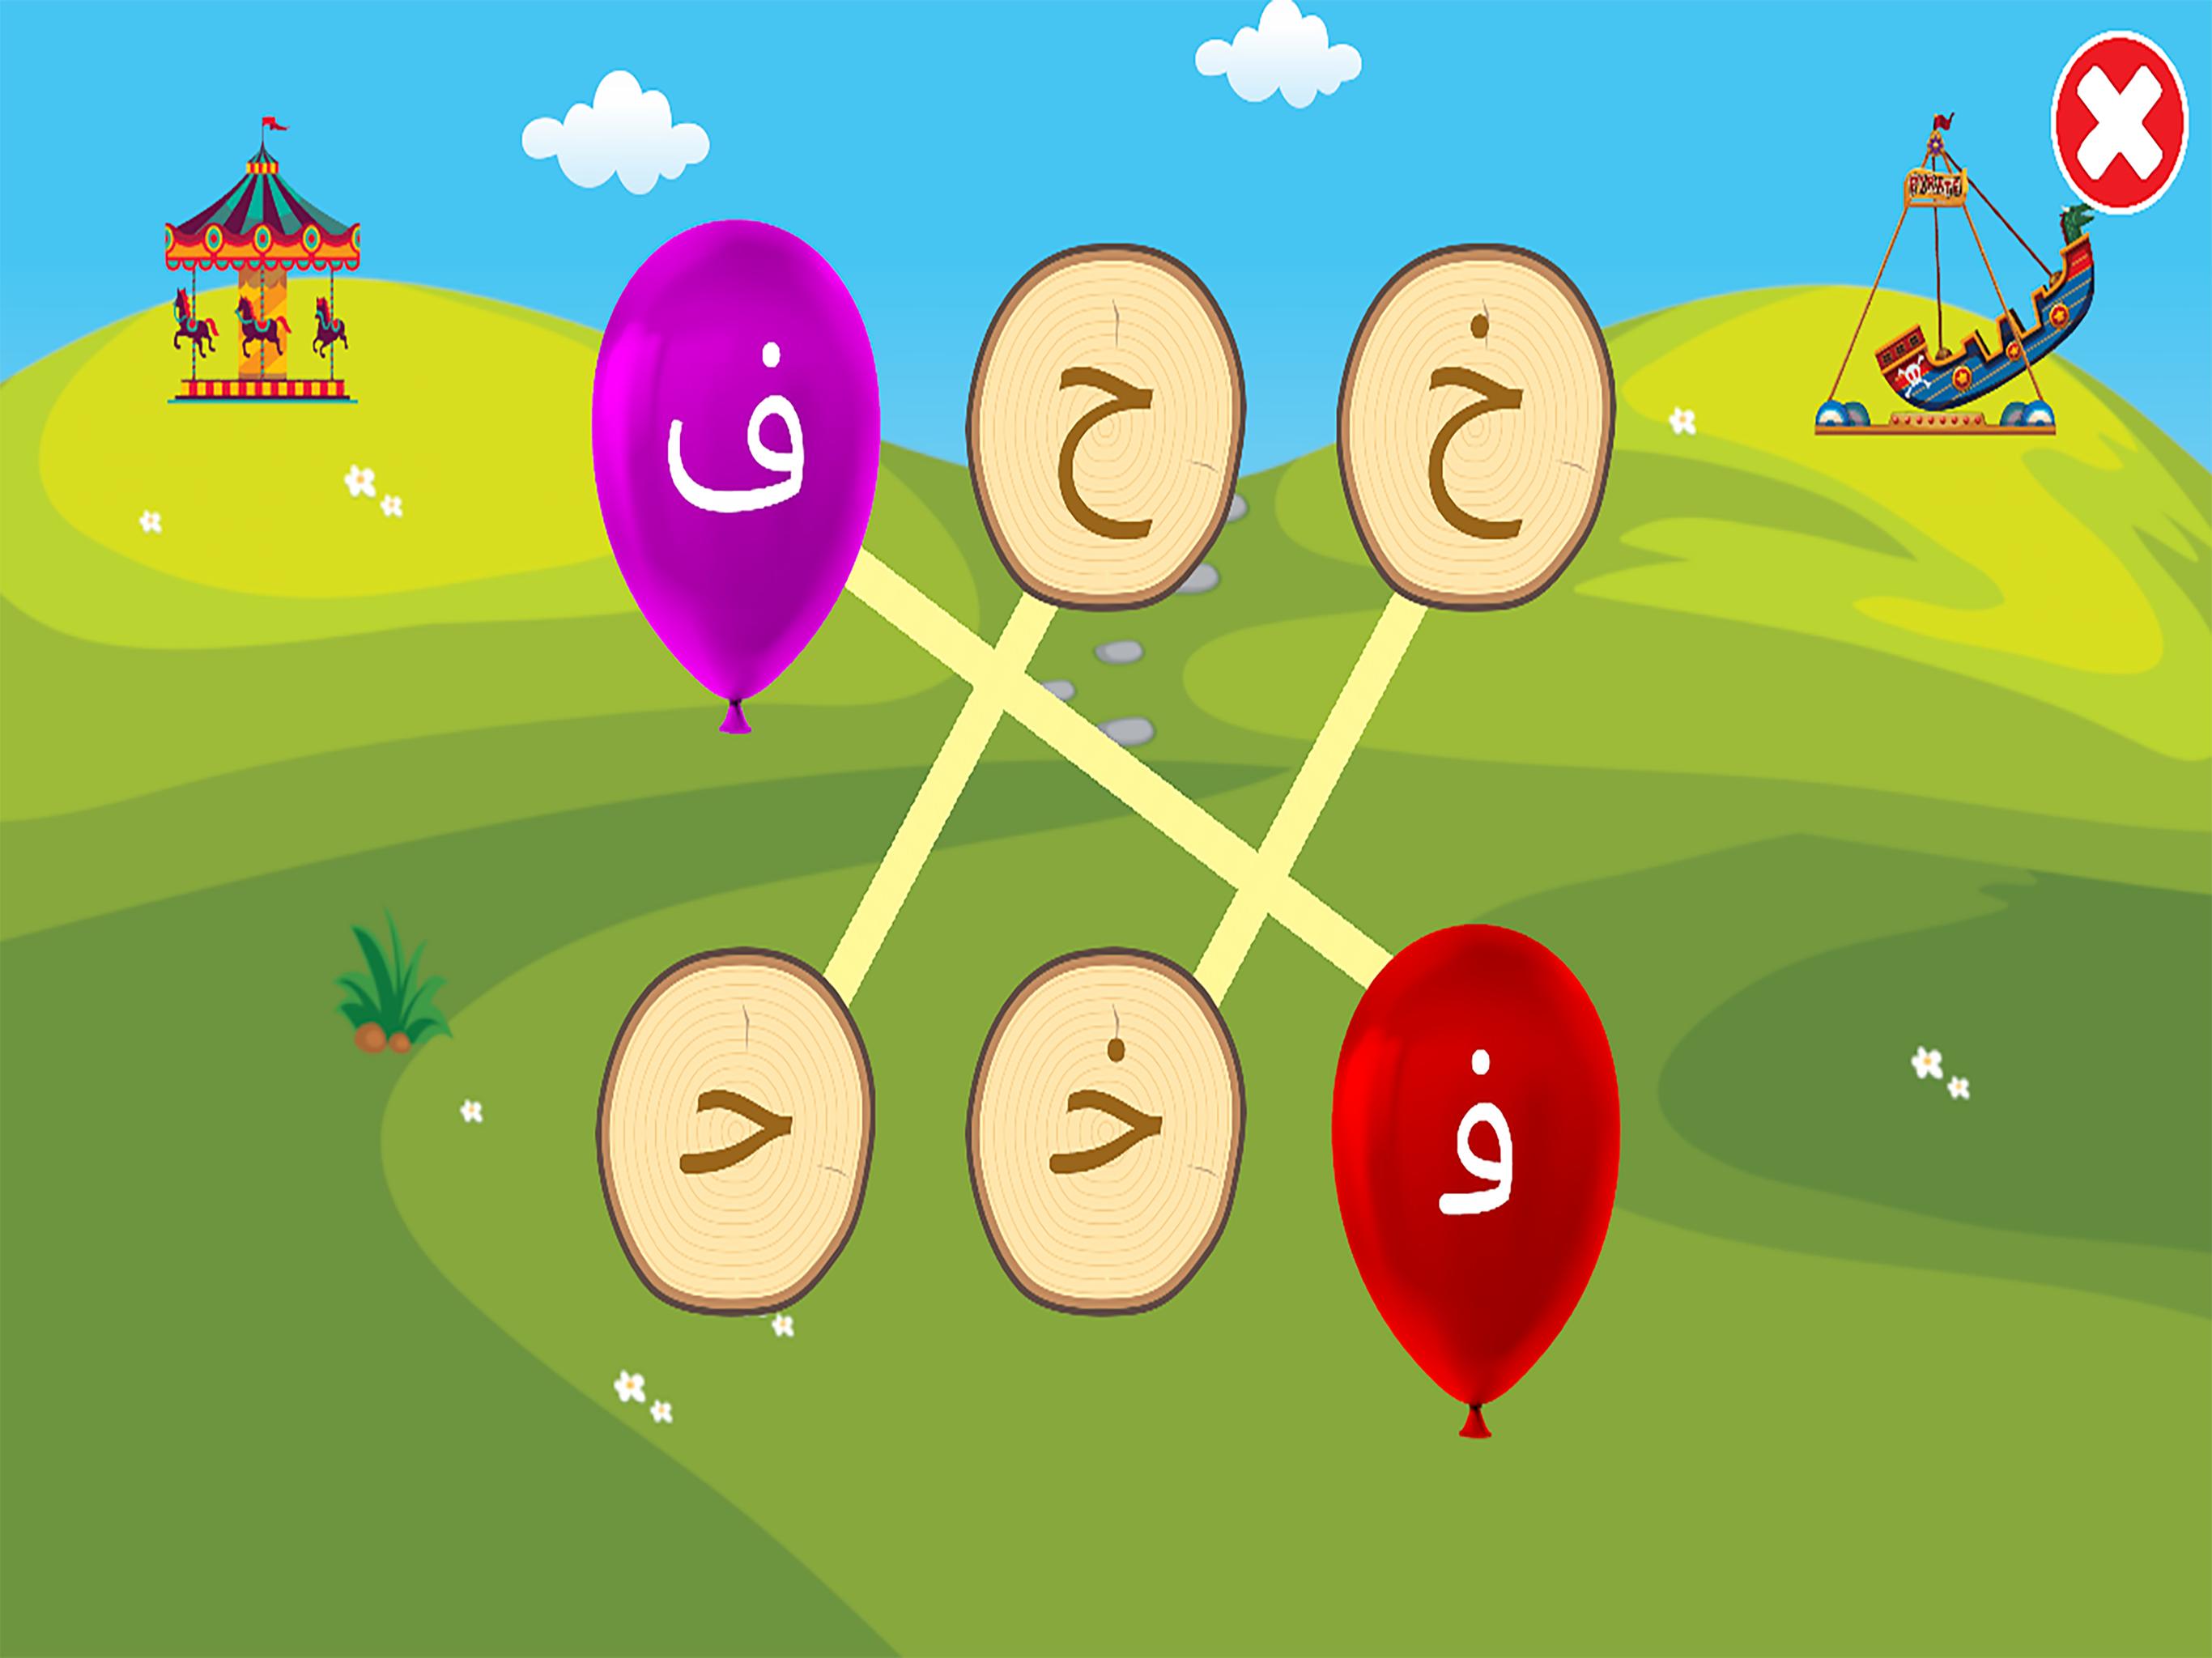 الفبای فارسی کودکان (Farsi alphabet game) 1.11.2 Screenshot 13